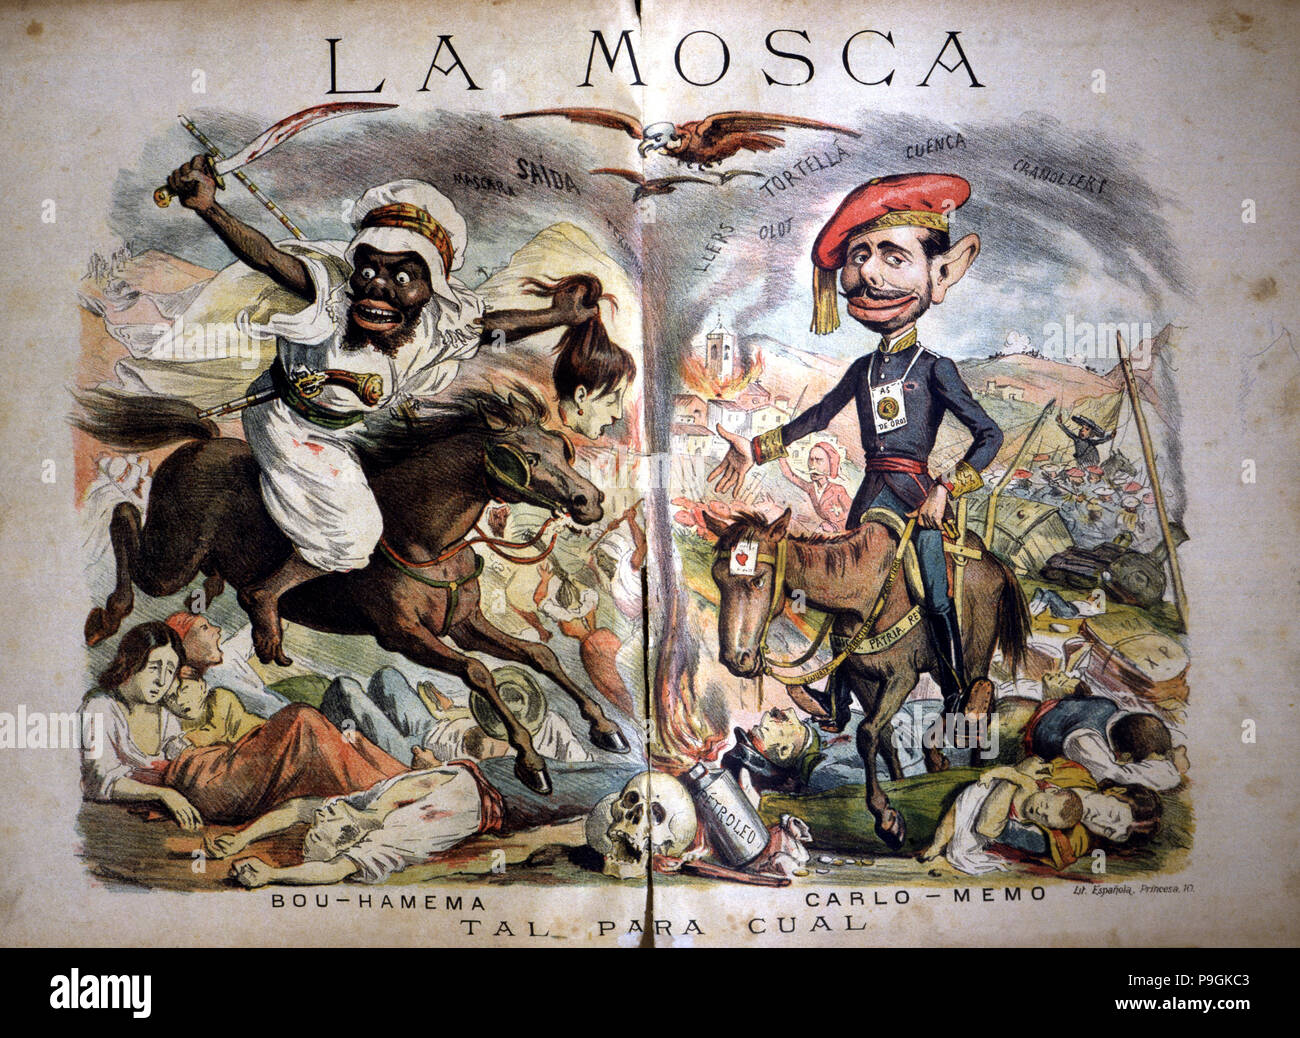 Caricatures satiriques de la situation au Maroc et la guerre carliste, 'Tal Cual para', publié… Banque D'Images